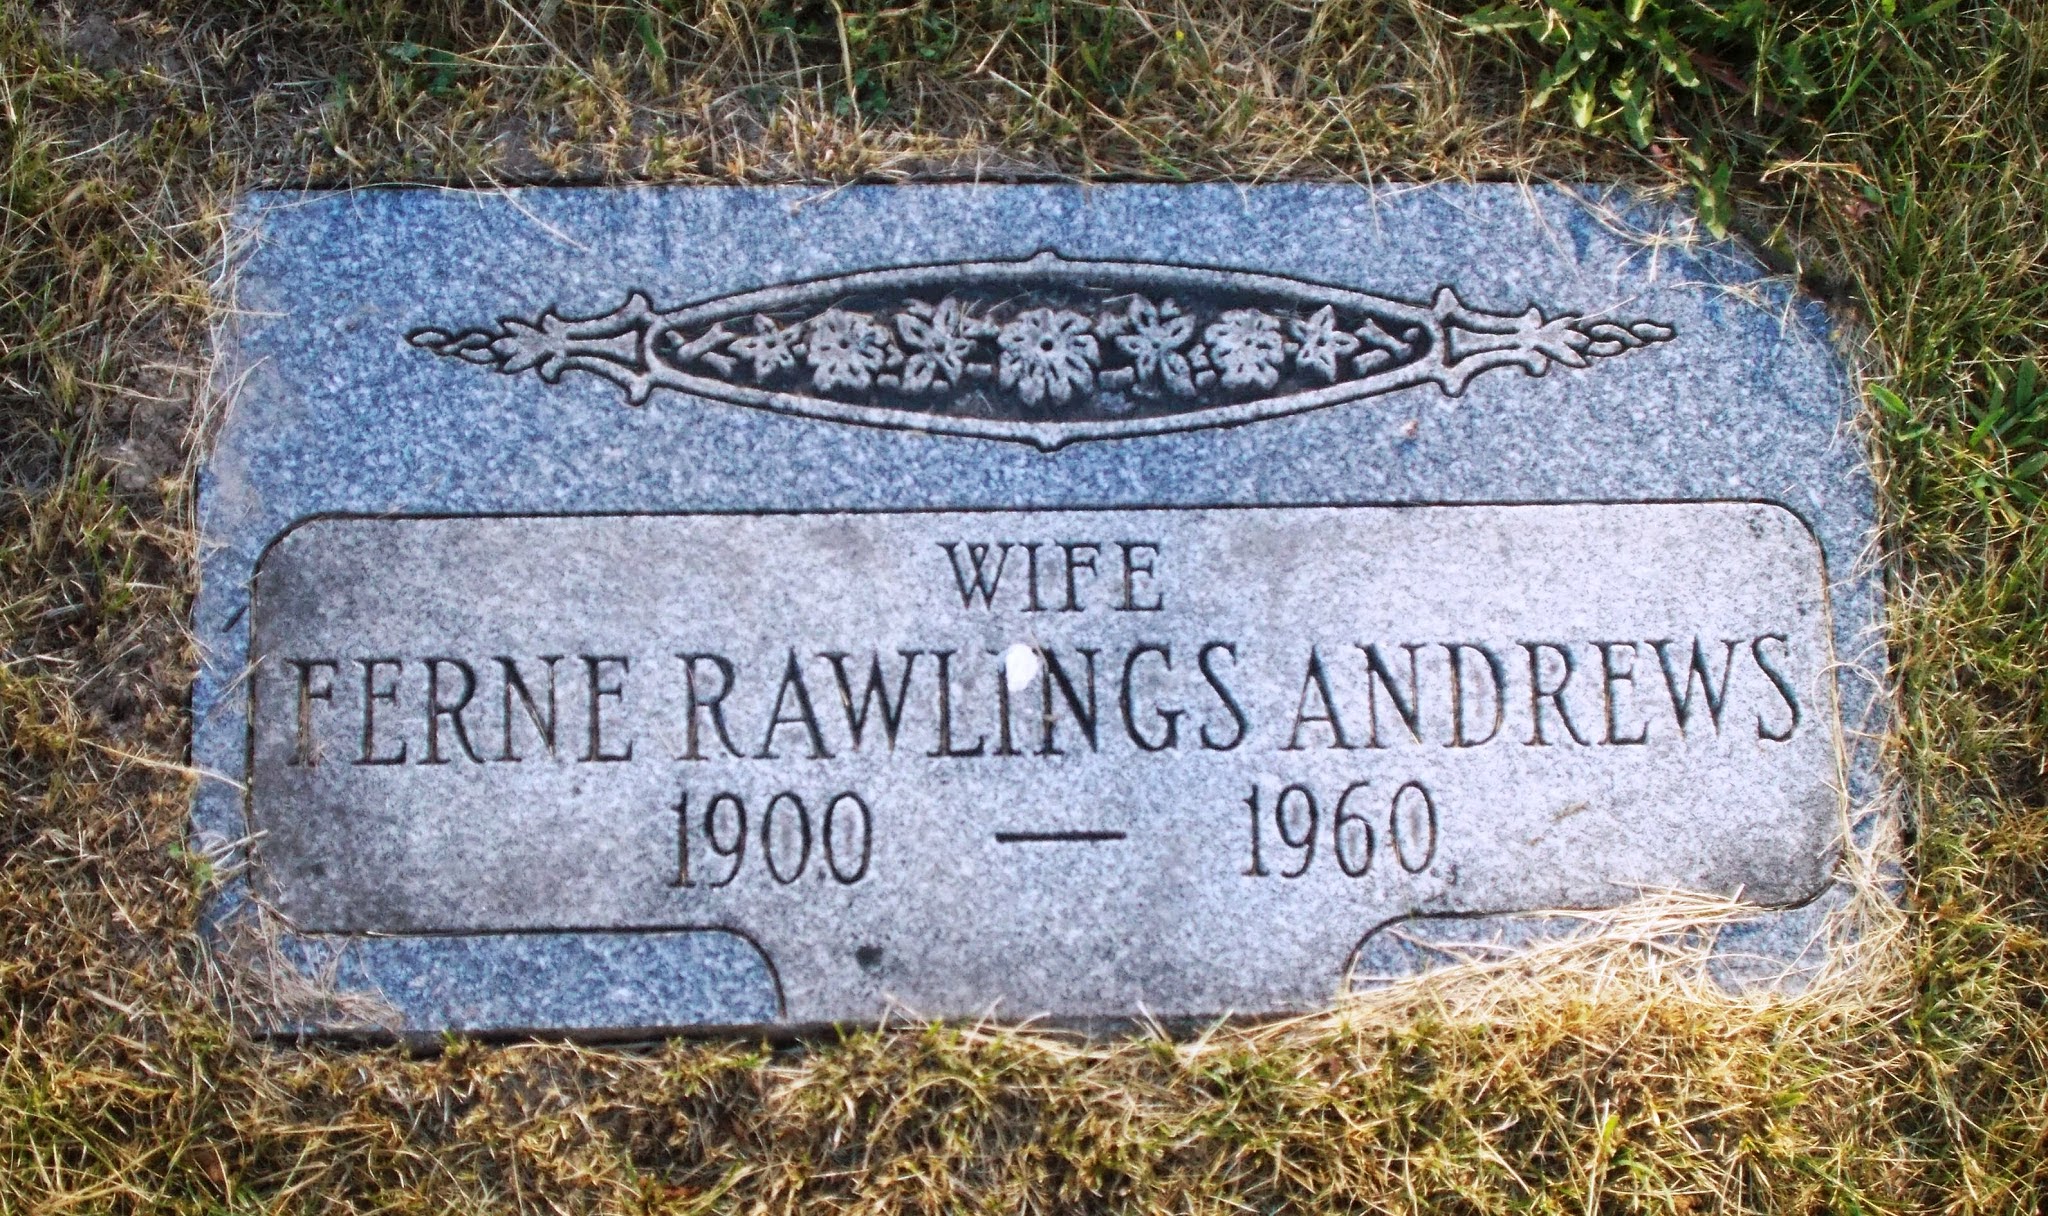 Ferne Rawlings Andrews